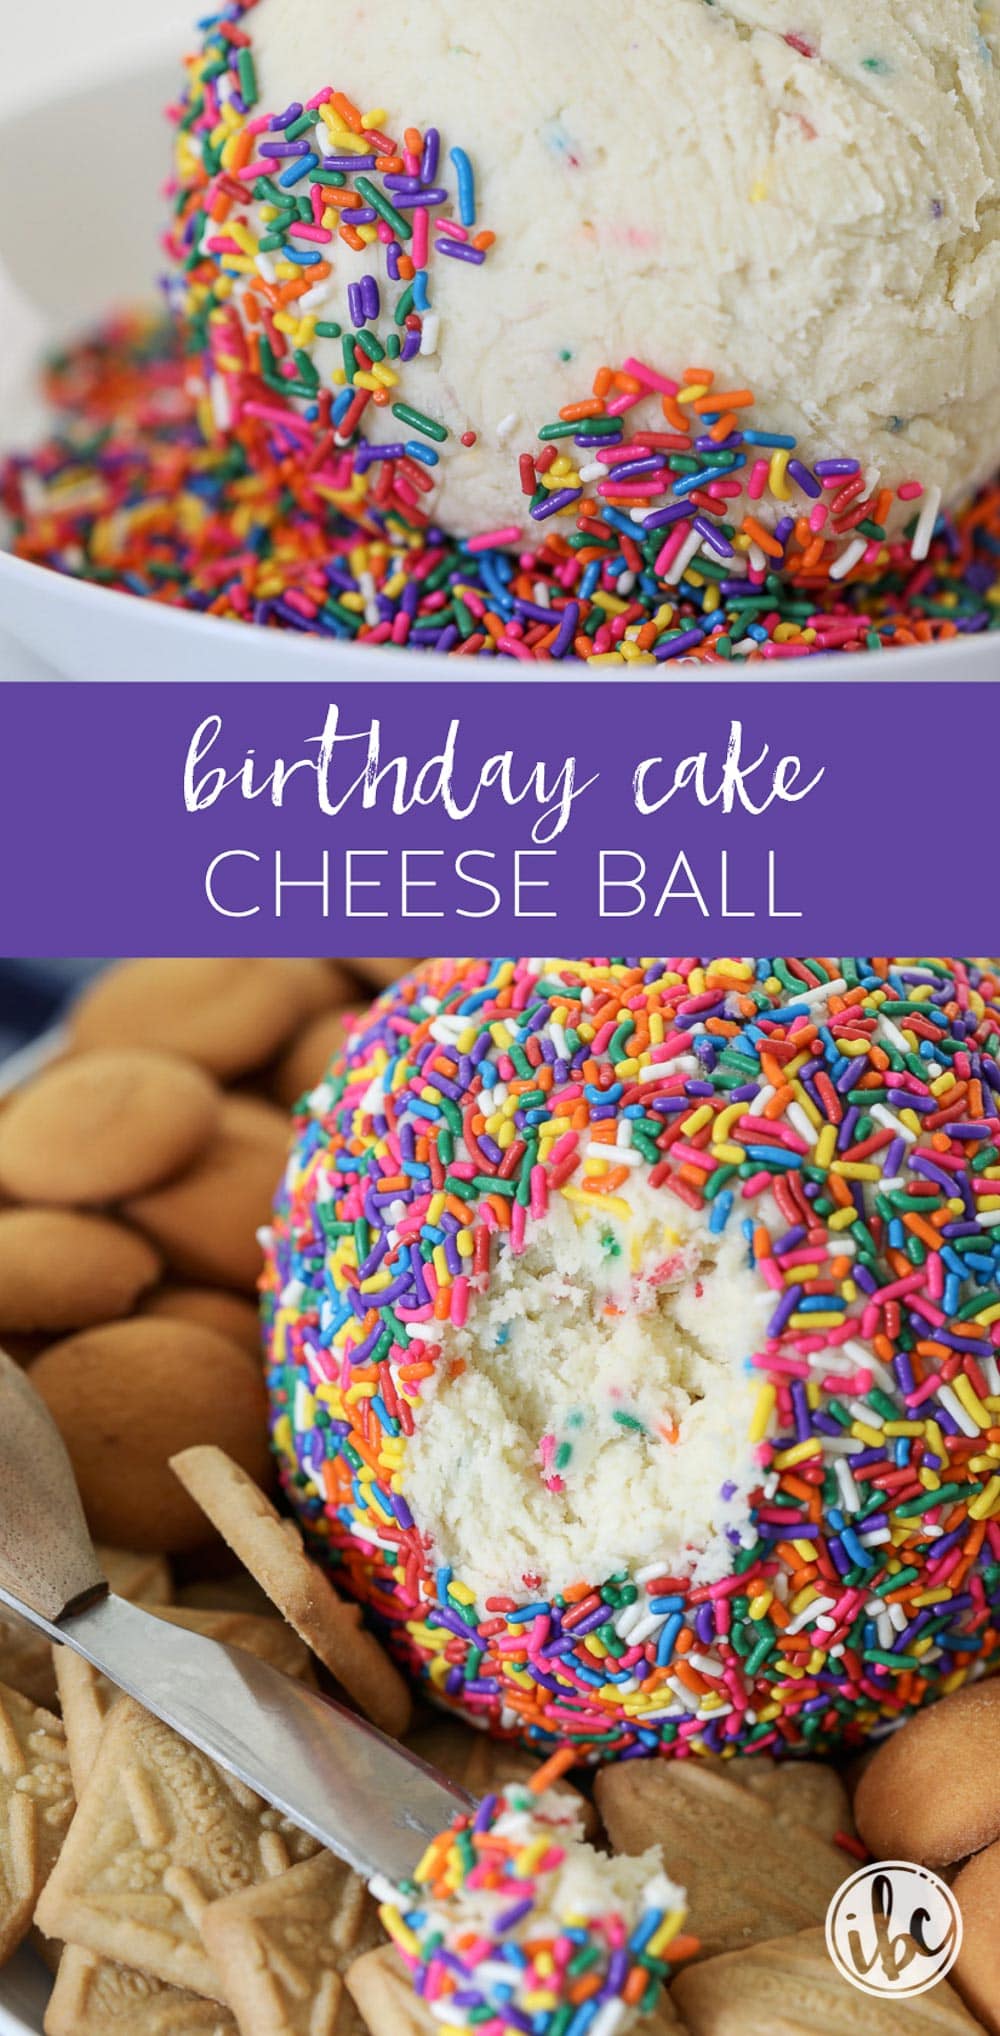 A Colorful Birthday Cake Cheese Ball dessert recipe! #cheeseball #birthday #birthdaycake #cake #batter #dessert #recipe #funfetti